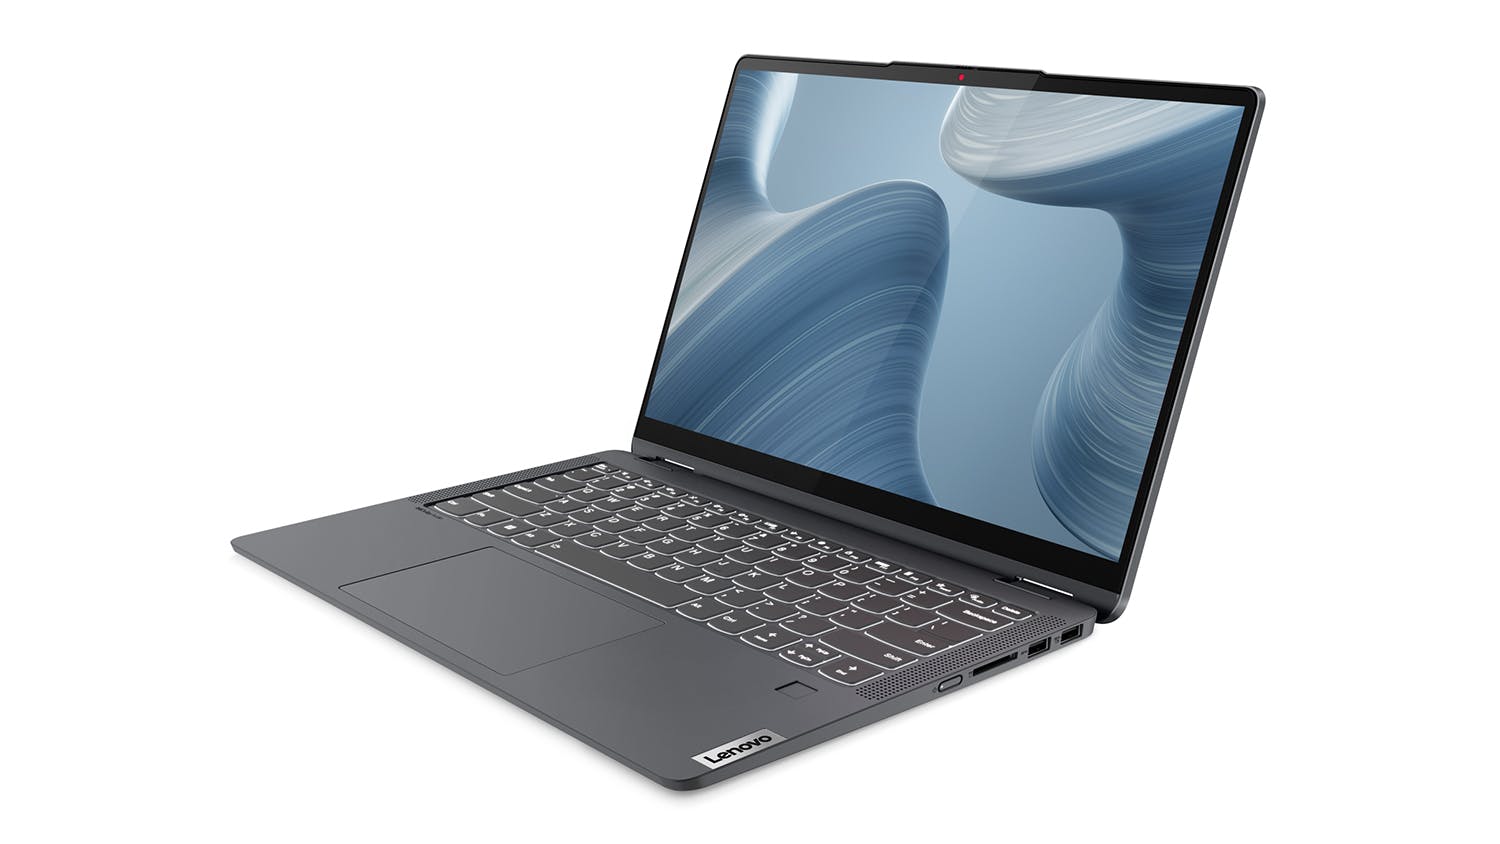 Lenovo IdeaPad Flex 5i (7th Gen) 14" 2-in-1 Laptop - Intel Core i7 16GB-RAM 512GB-SSD - Storm Grey (82R700JRAU)